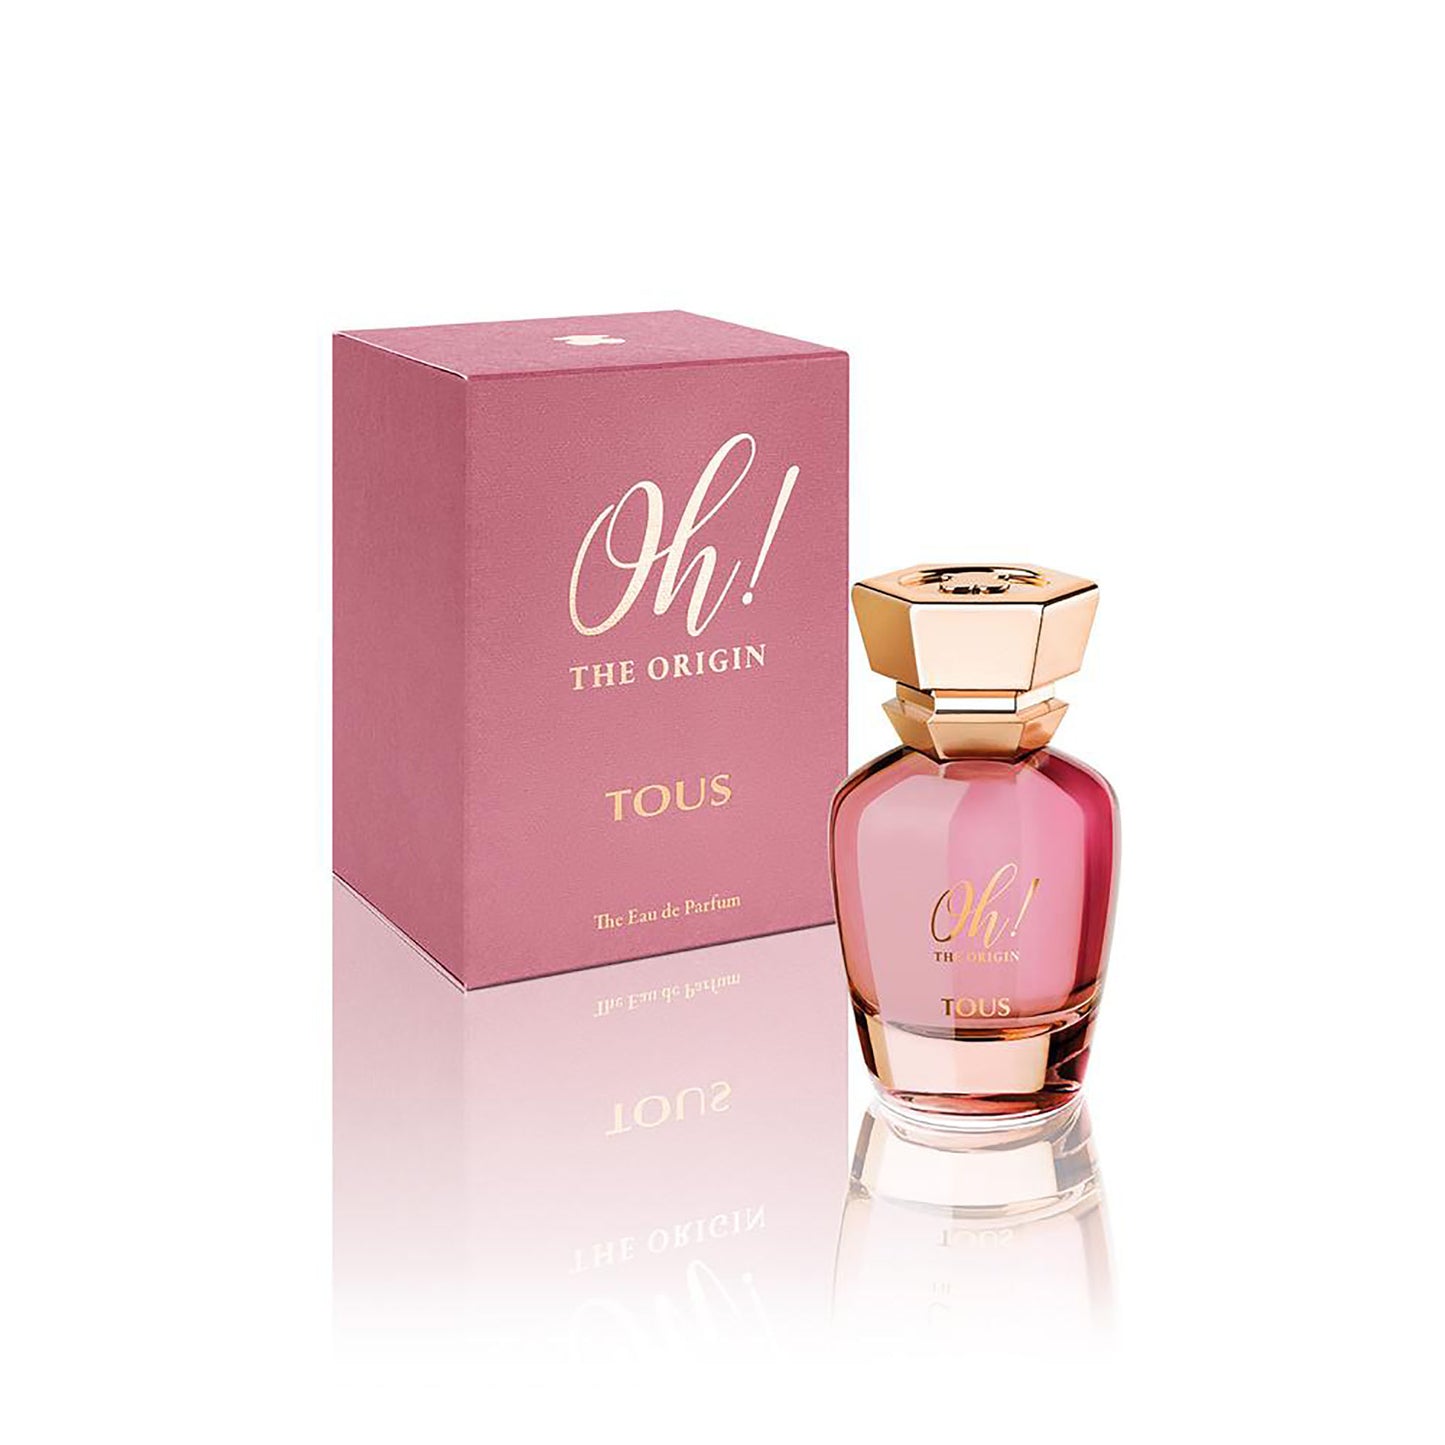 Oh! The Origin 1.7 oz Eau de Parfum